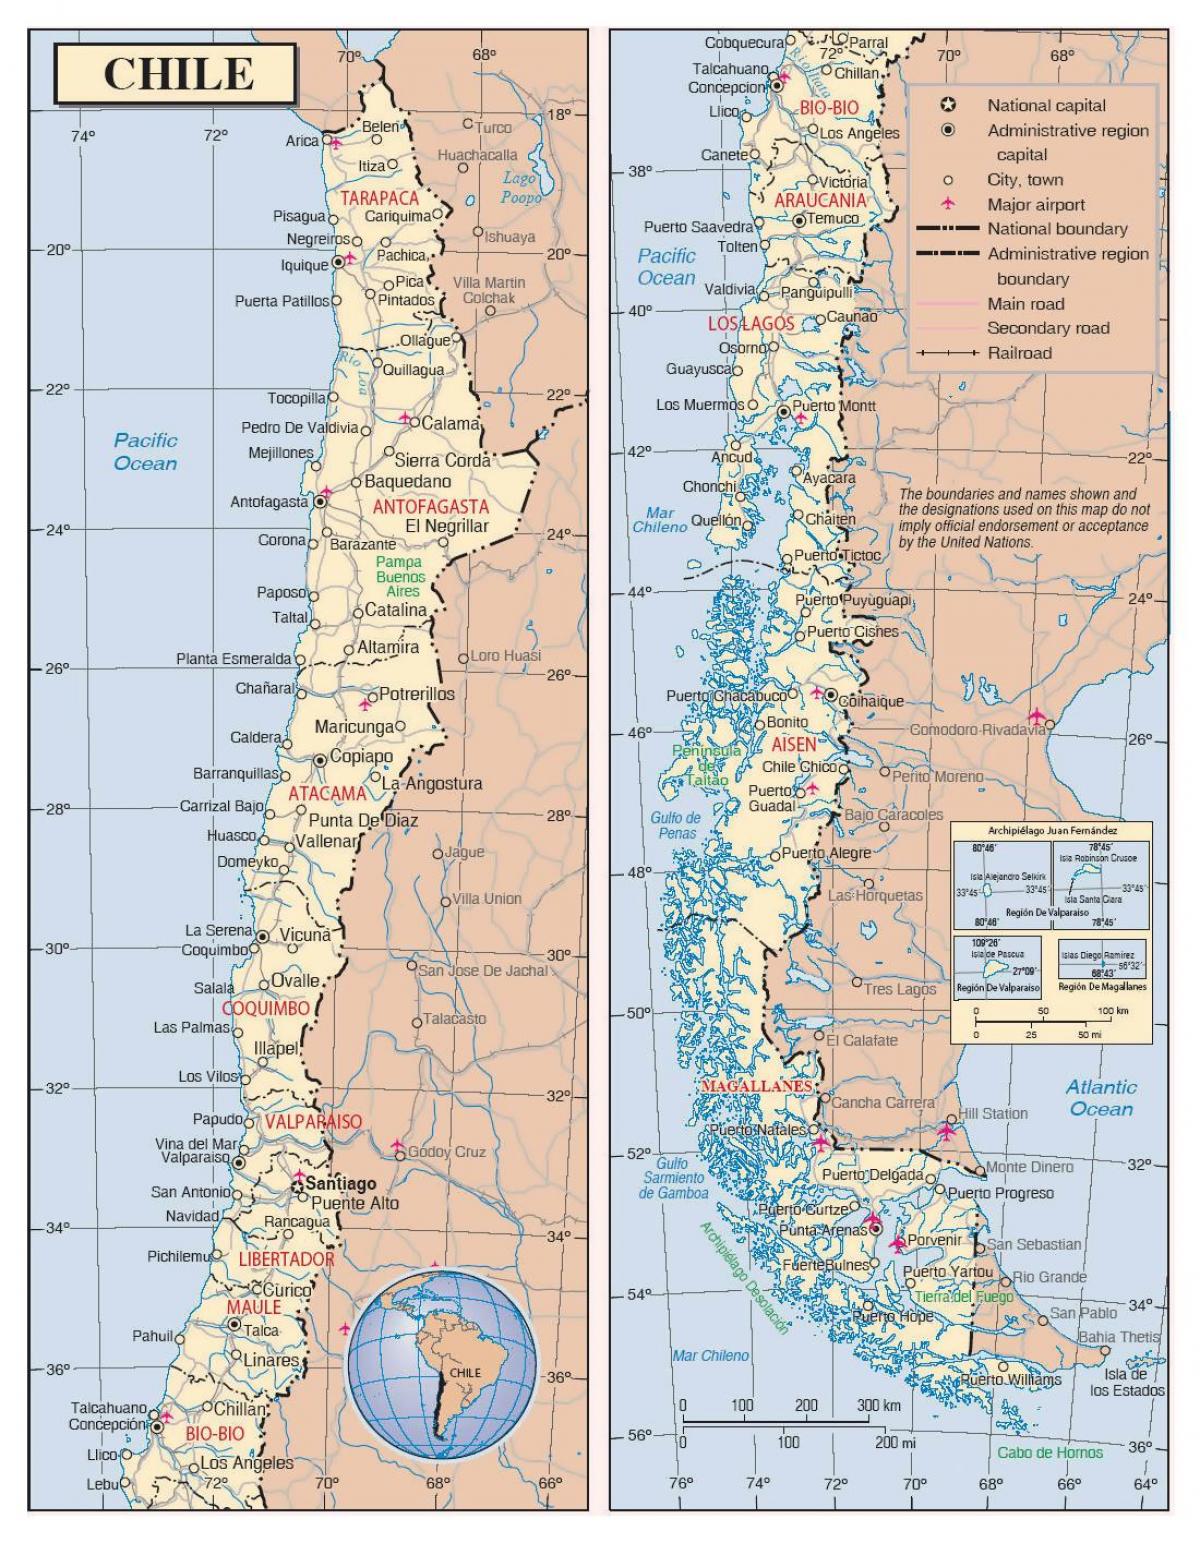 नक्शे के साथ चिली के शहरों